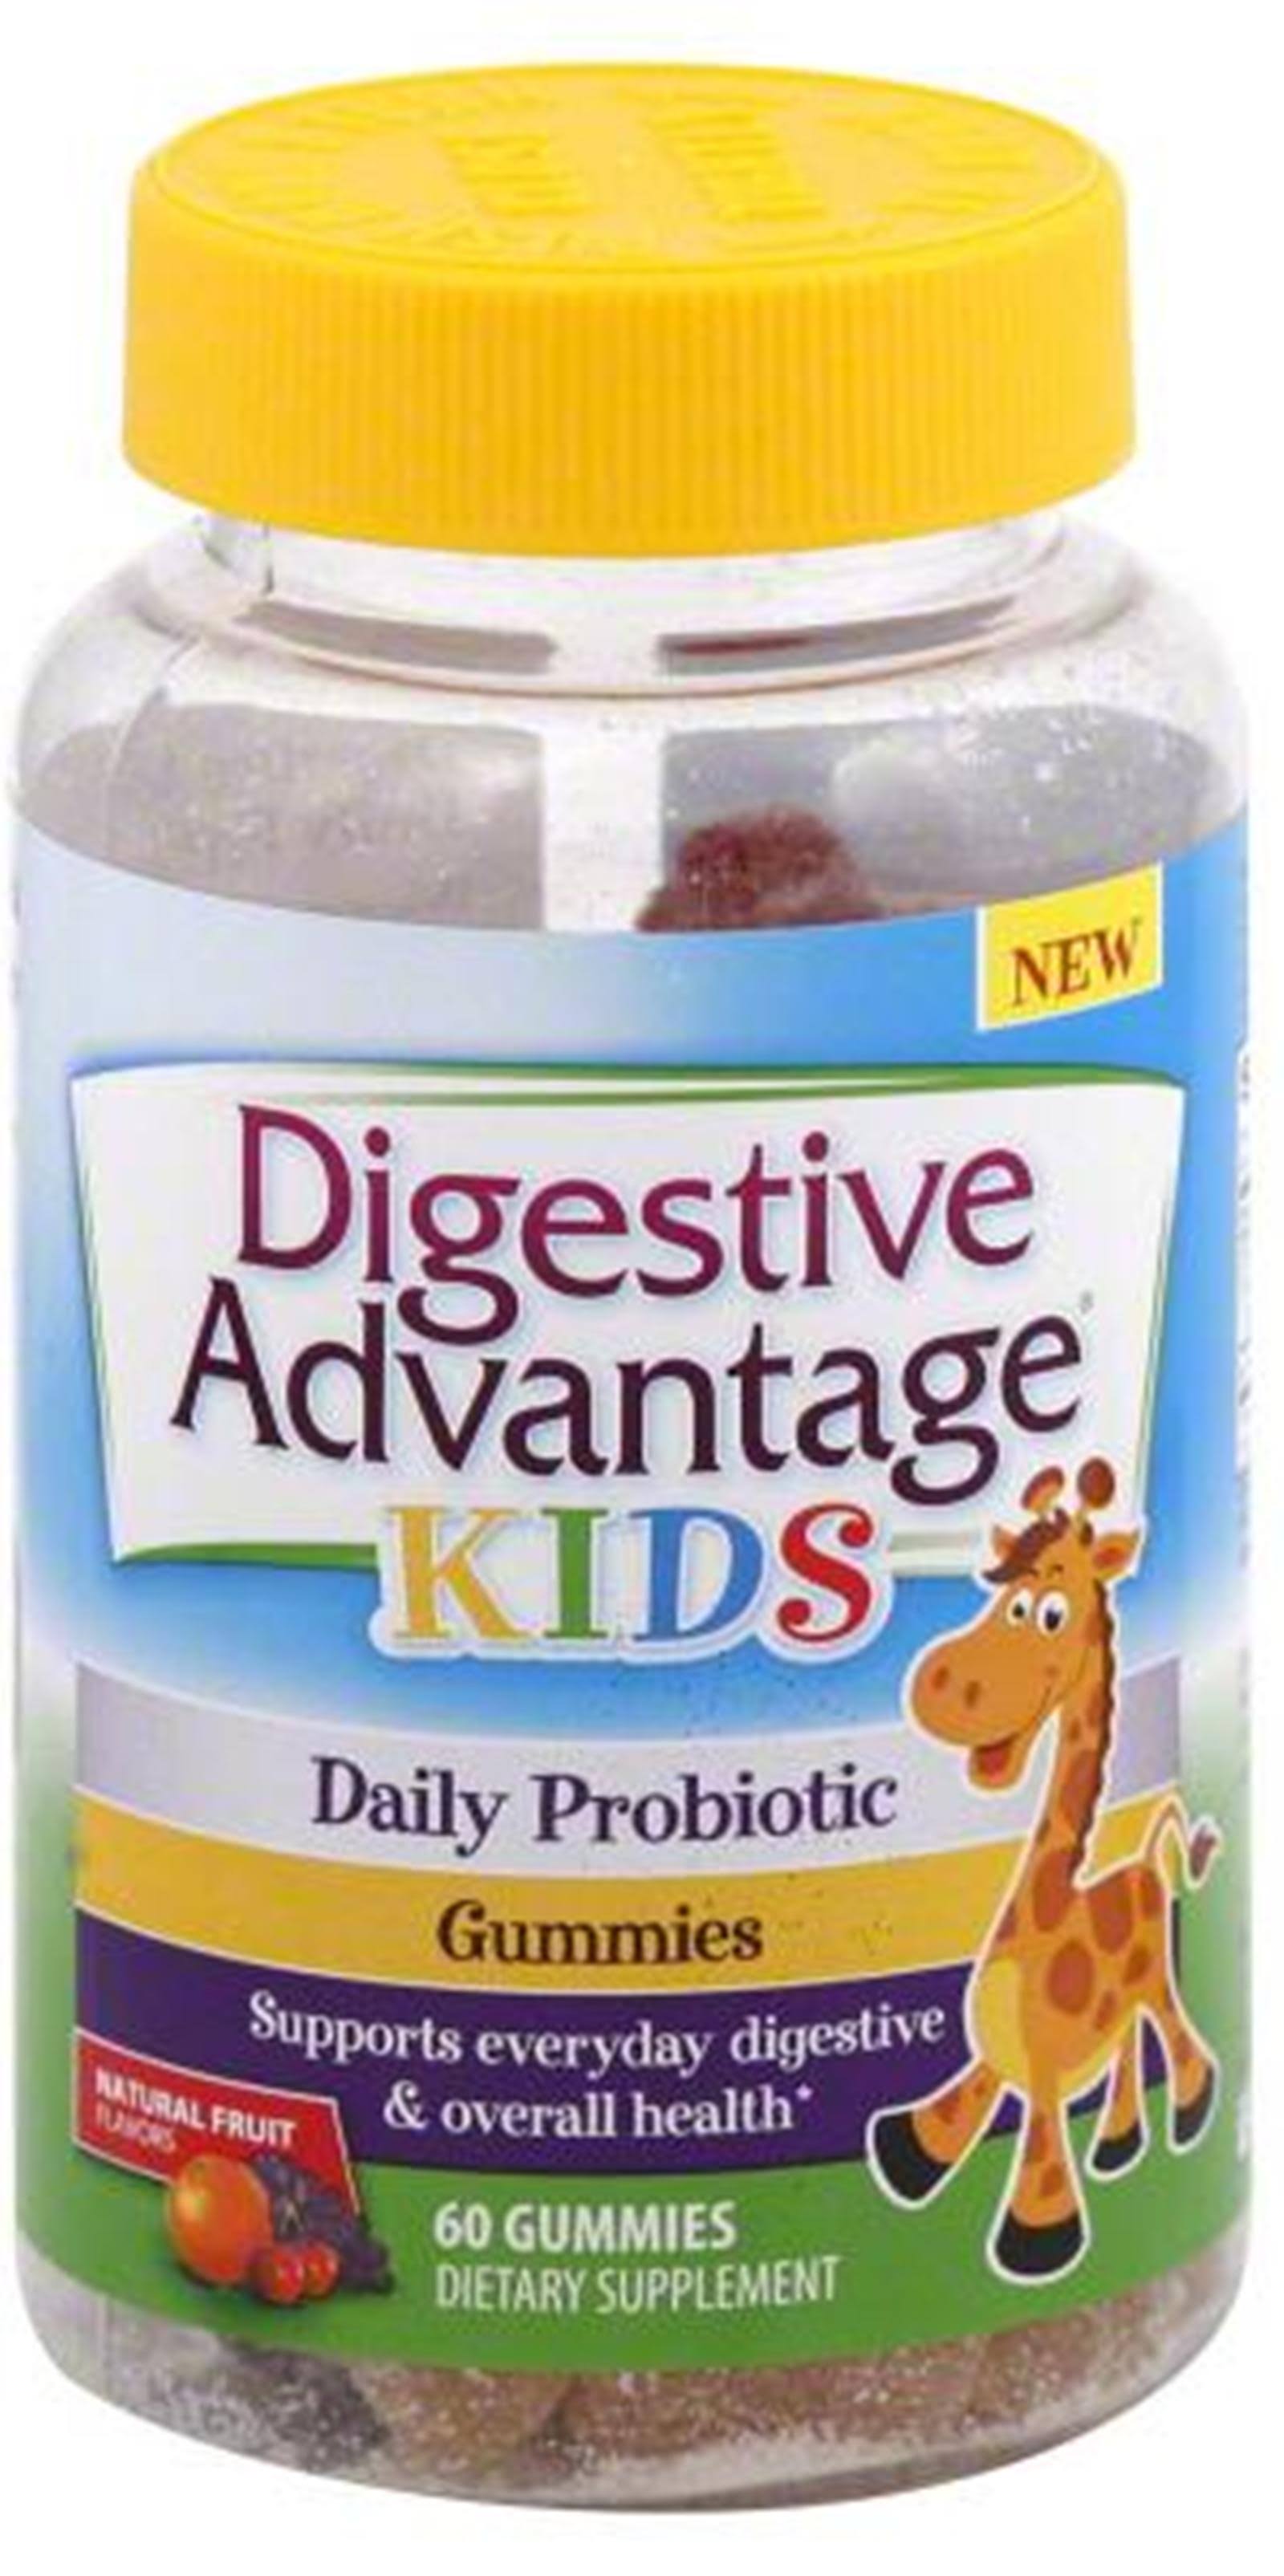 Digestive Advantage Kids Daily Probiotic Supplement - 60 Gummies, Natural Fruit Flavors